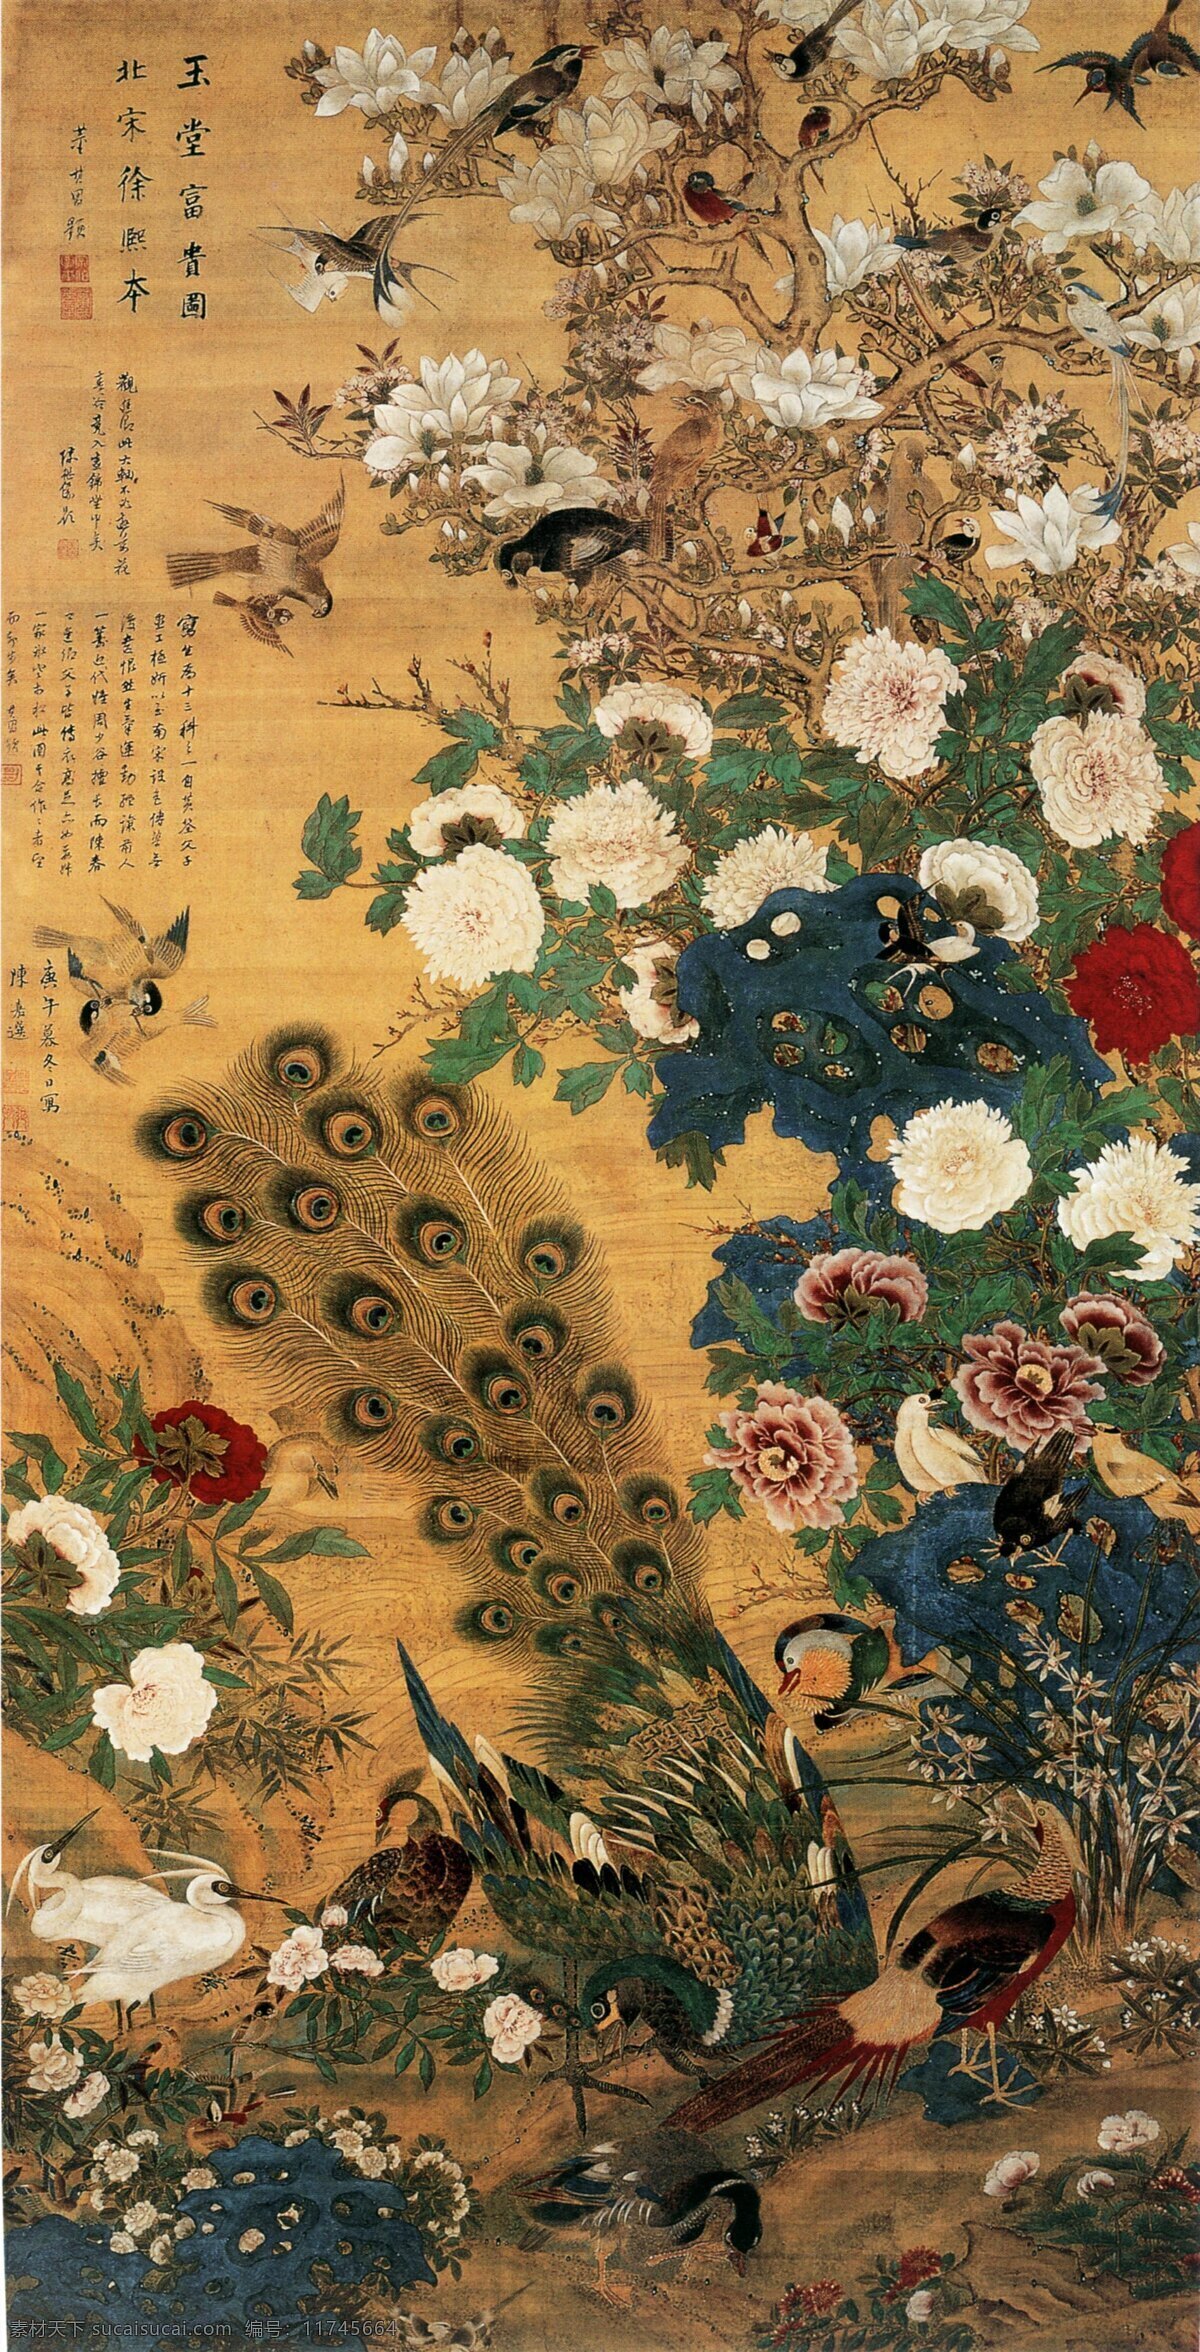 玉堂富贵图 花鸟 牡丹花 绘画 书法 孔雀 喜鹊 白鹭 山鸡 各种各样的花 中国画 文化艺术 传统文化 设计图库